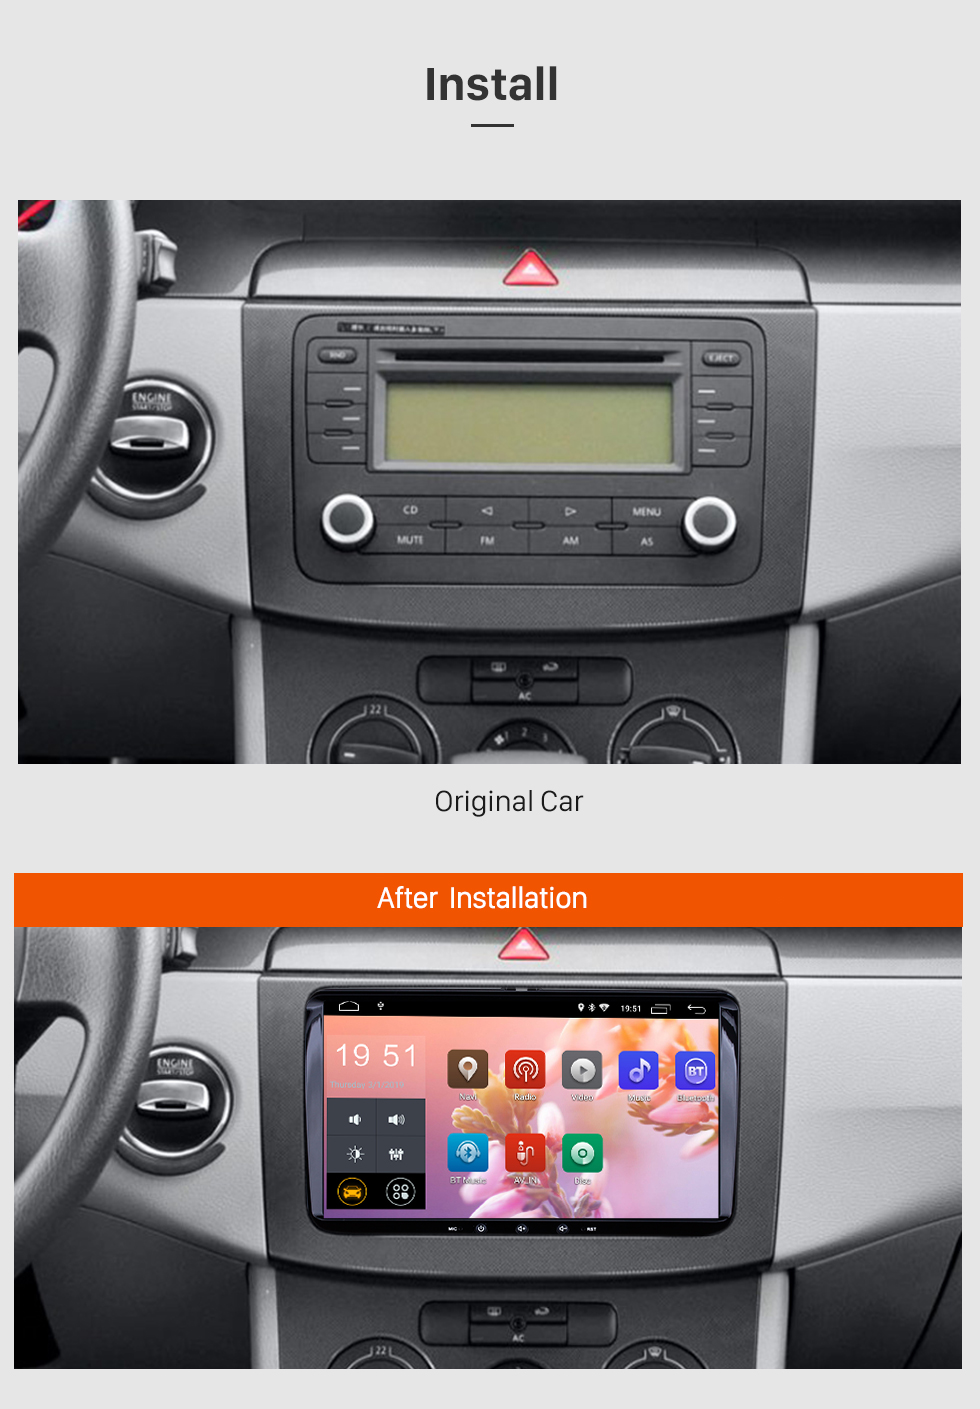 Seicane 6,2 Zoll Android 9.0 für Universal Radio GPS Navigationssystem mit HD Touchscreen Bluetooth Unterstützung Carplay Mirror Link